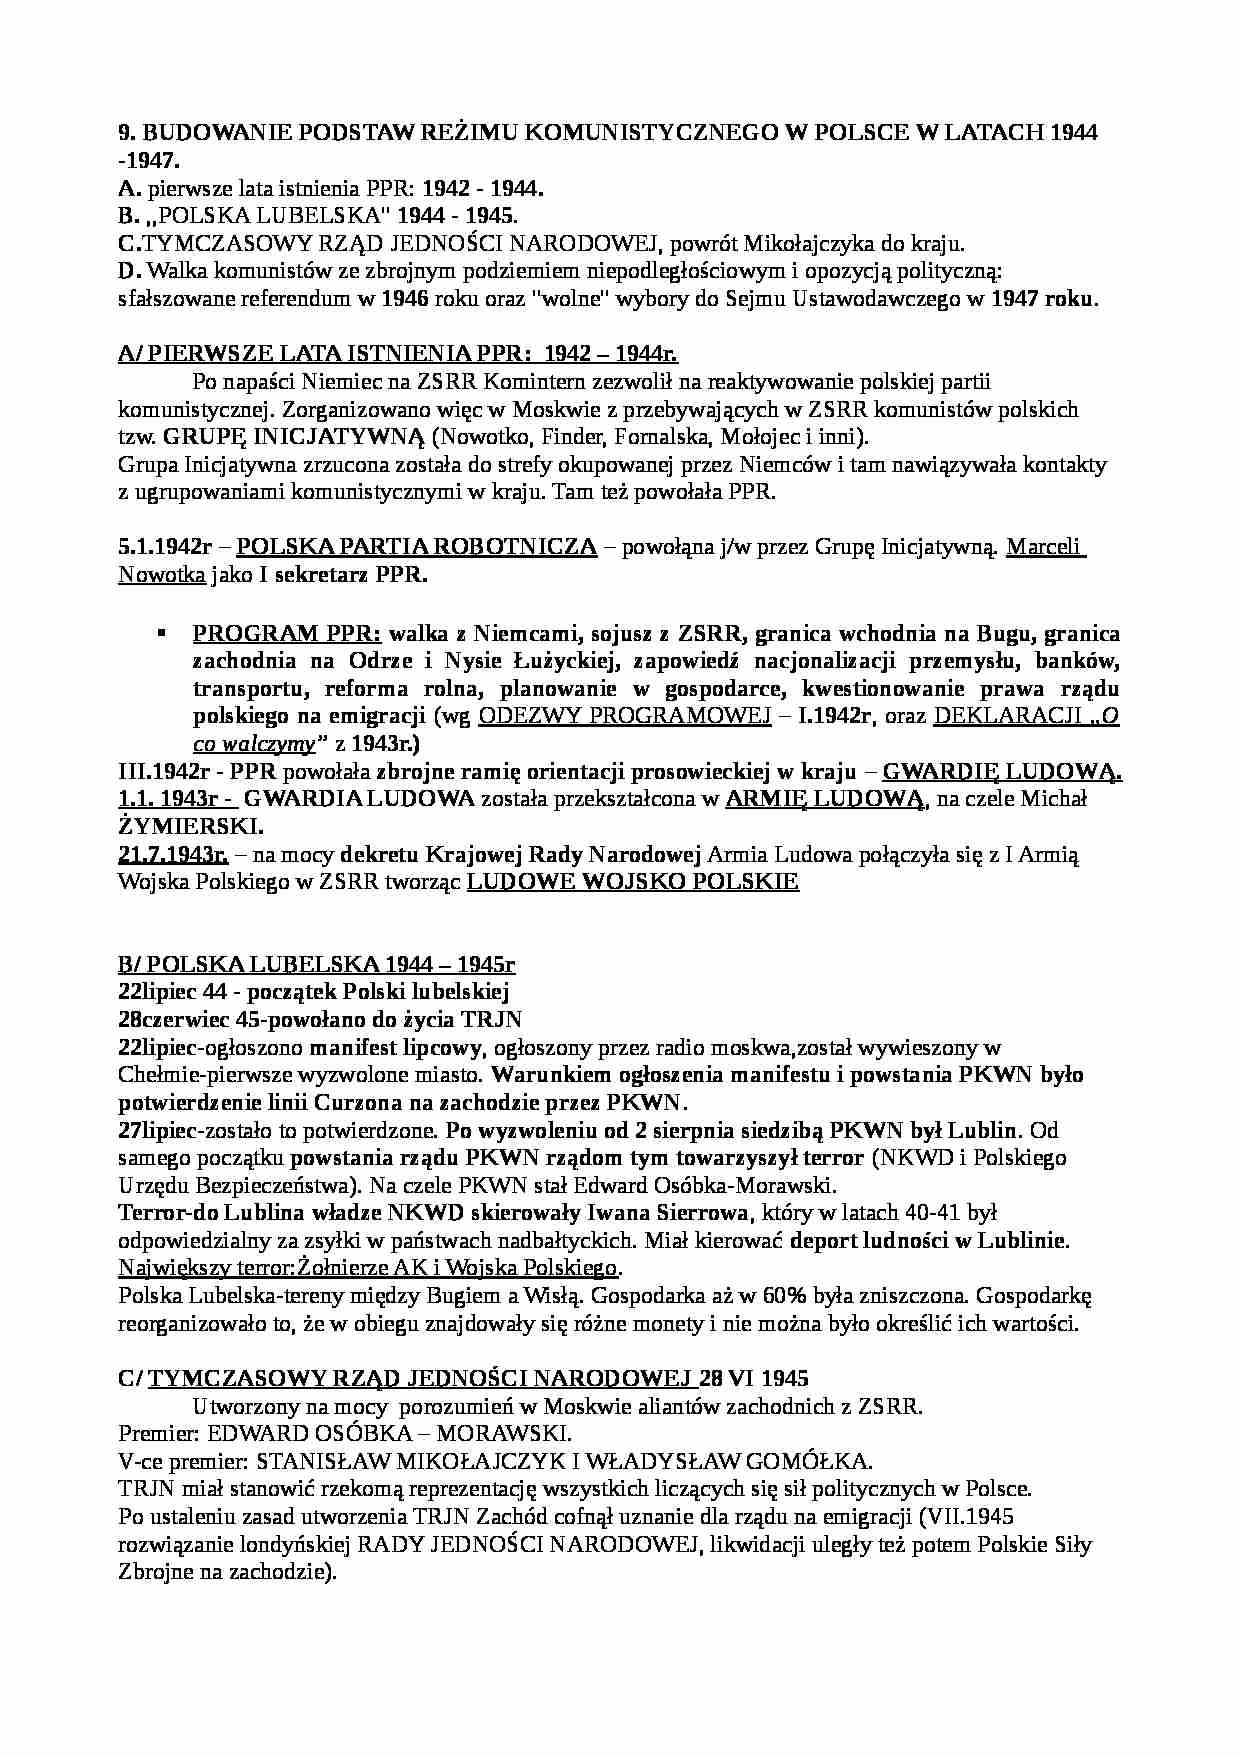 Budowanie podstaw reżimu komunistycznego w Polsce w latach 1944 - 1947 - strona 1